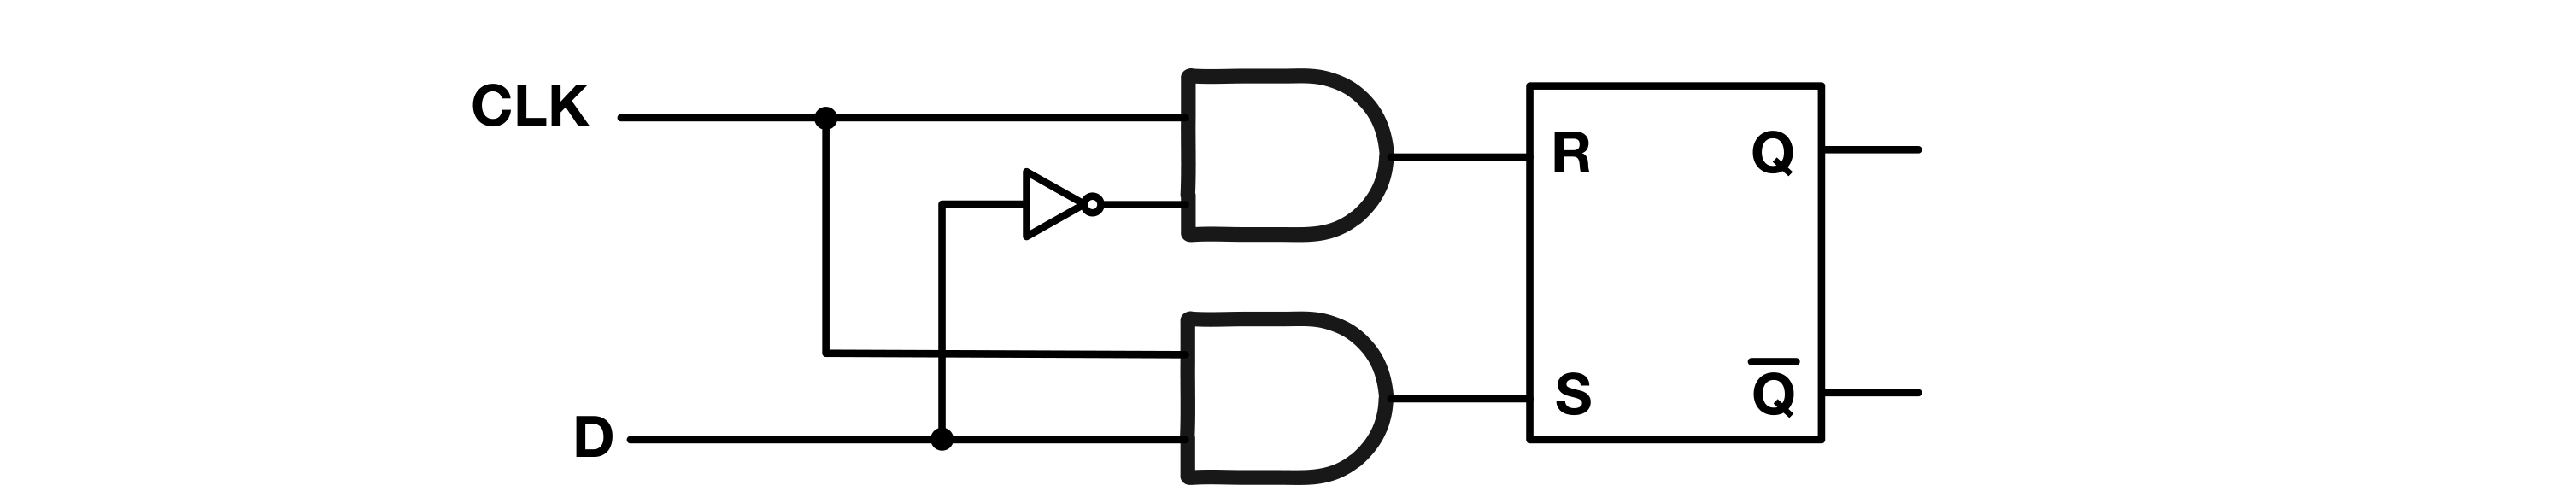 Figure 16: D Latch Schematic